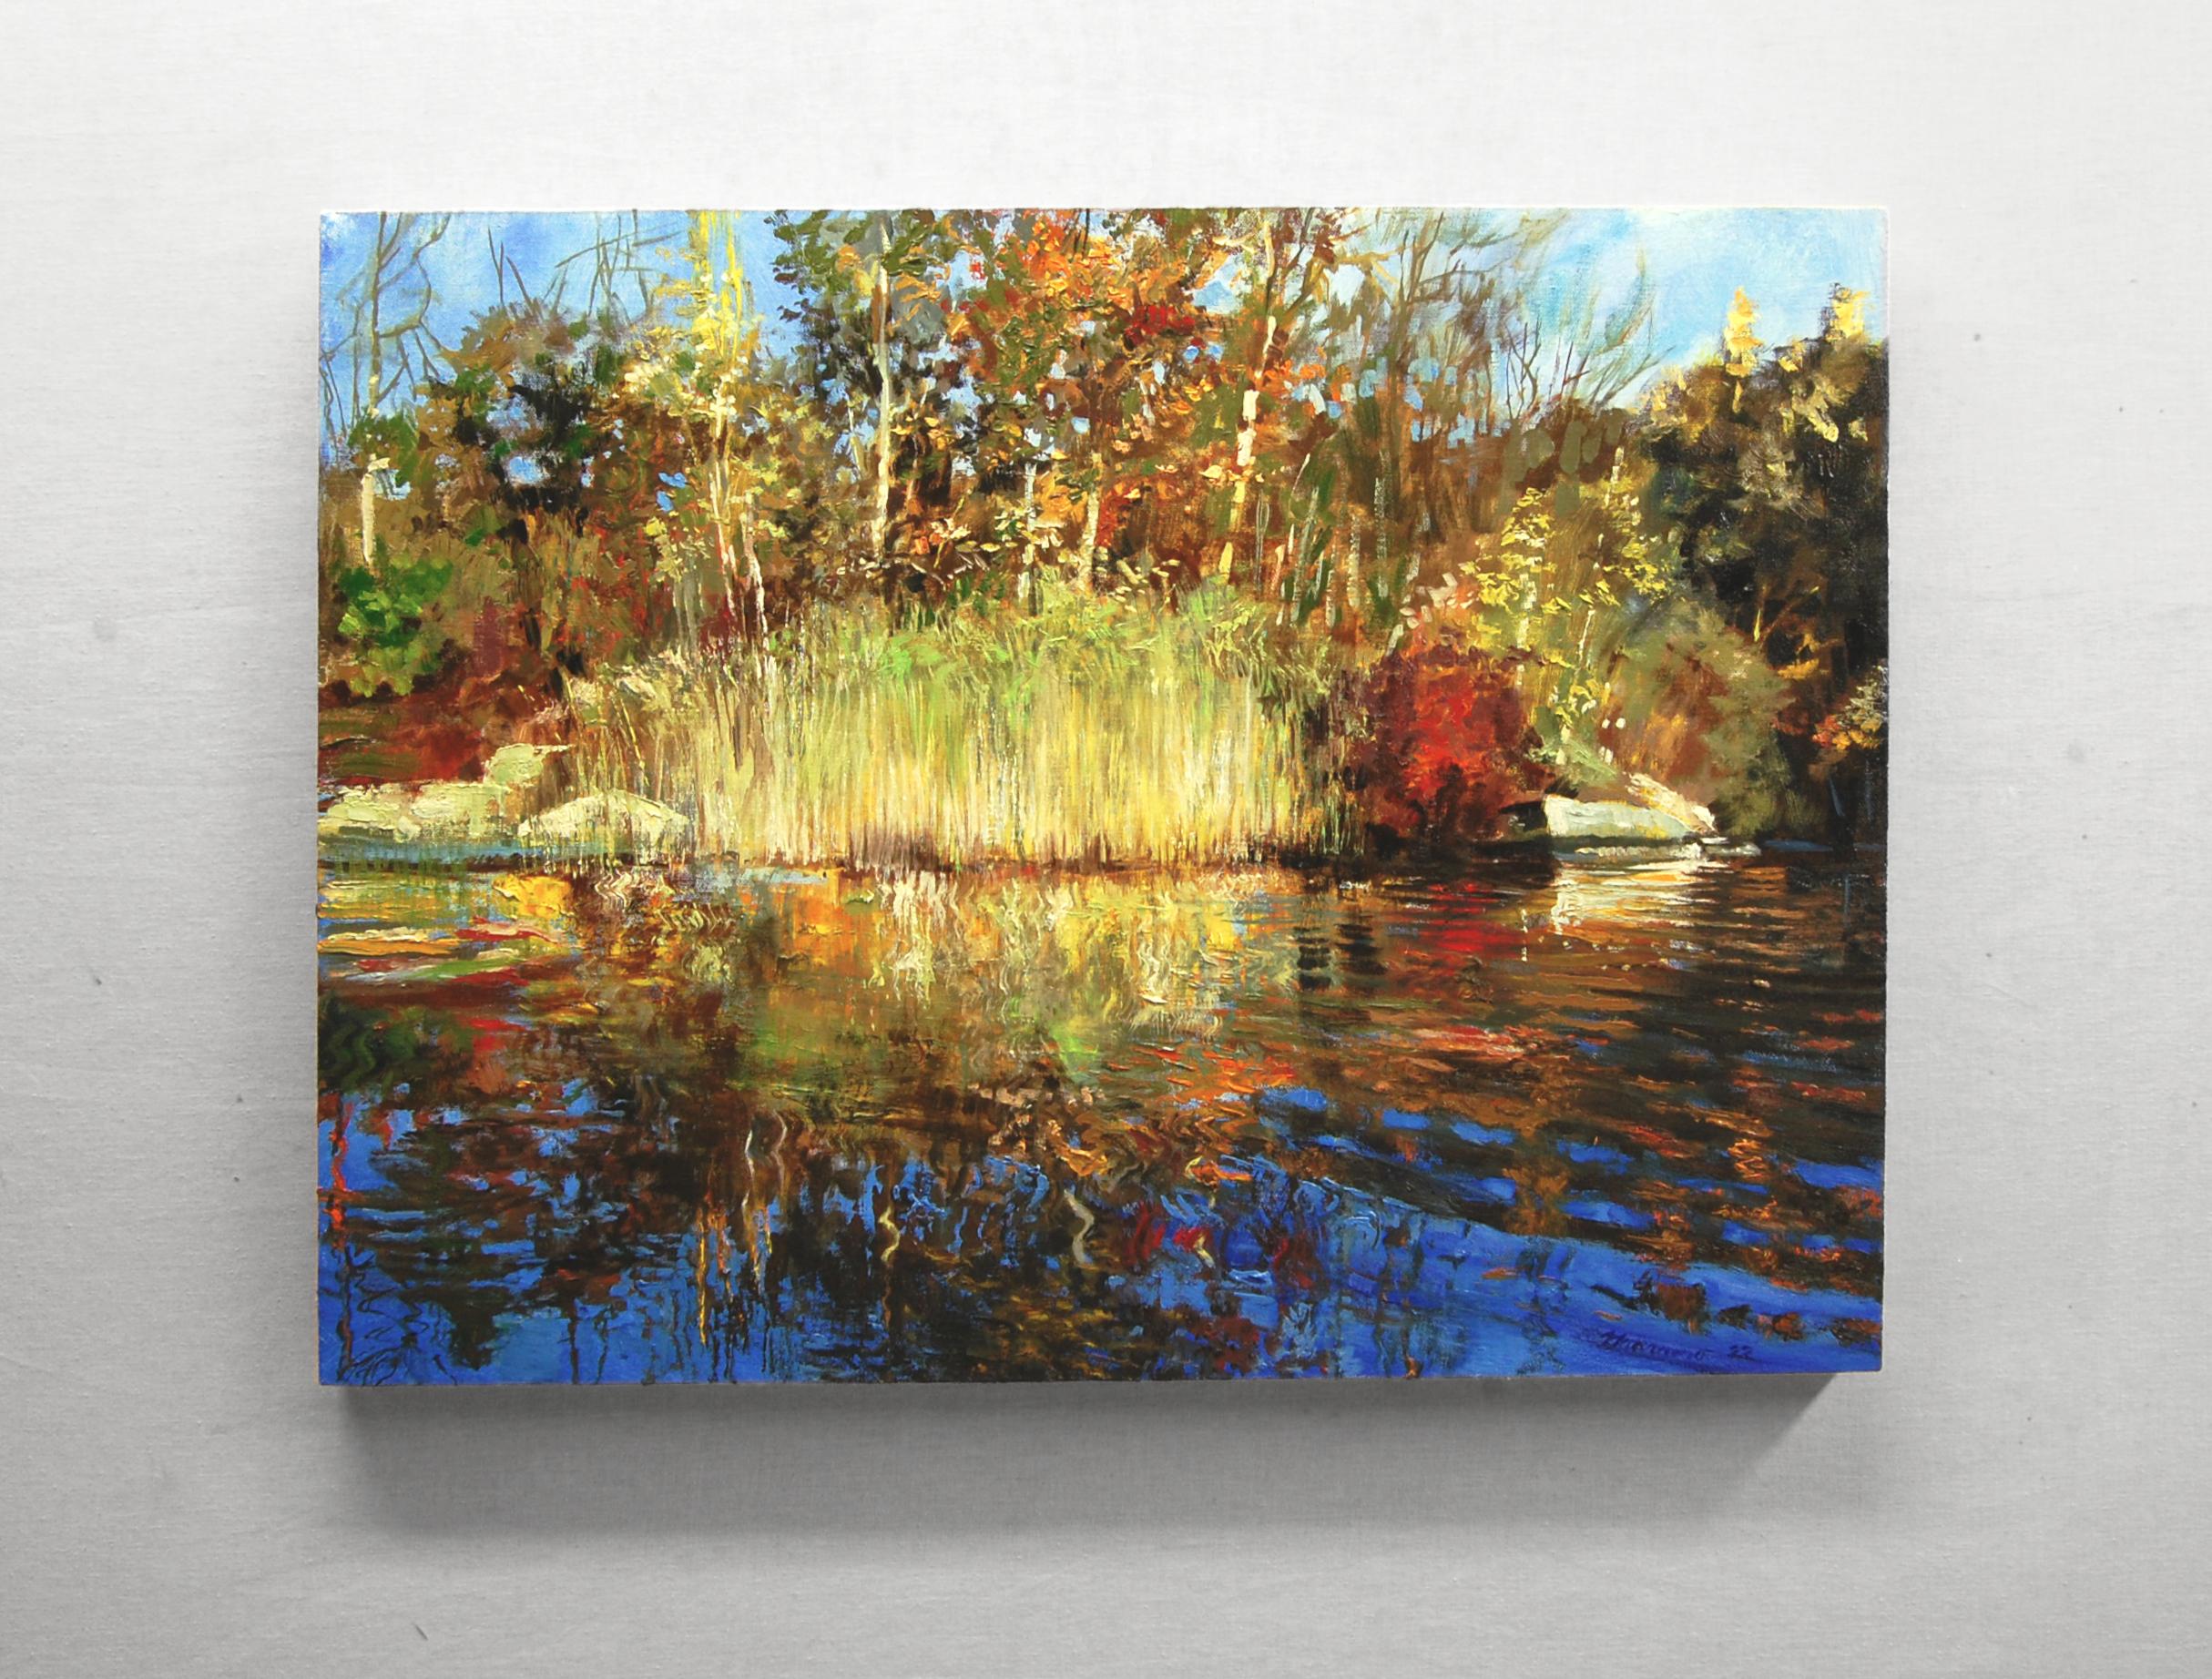 <p>Commentaires de l'artiste<br>L'artiste Onelio Marrero montre un étang ondulant entouré de couleurs automnales dorées. Fait partie de sa série qui explore les surfaces scintillantes des étangs et des lacs. Onelio invite le spectateur à apprécier